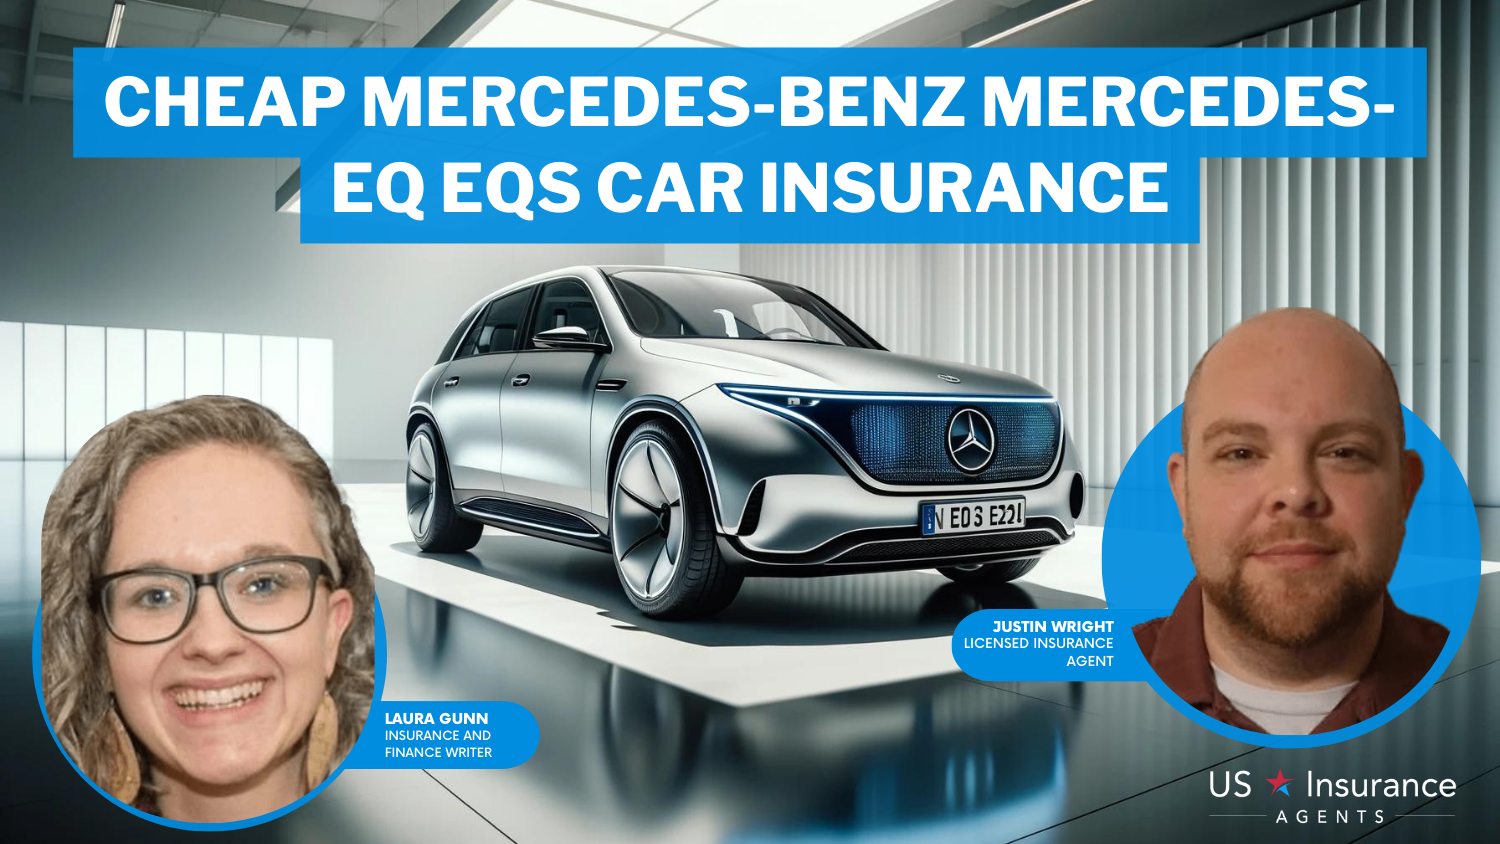 Cheap Mercedes-Benz Mercedes-EQ EQS: Safeco, Auto-Owners, and Progressive